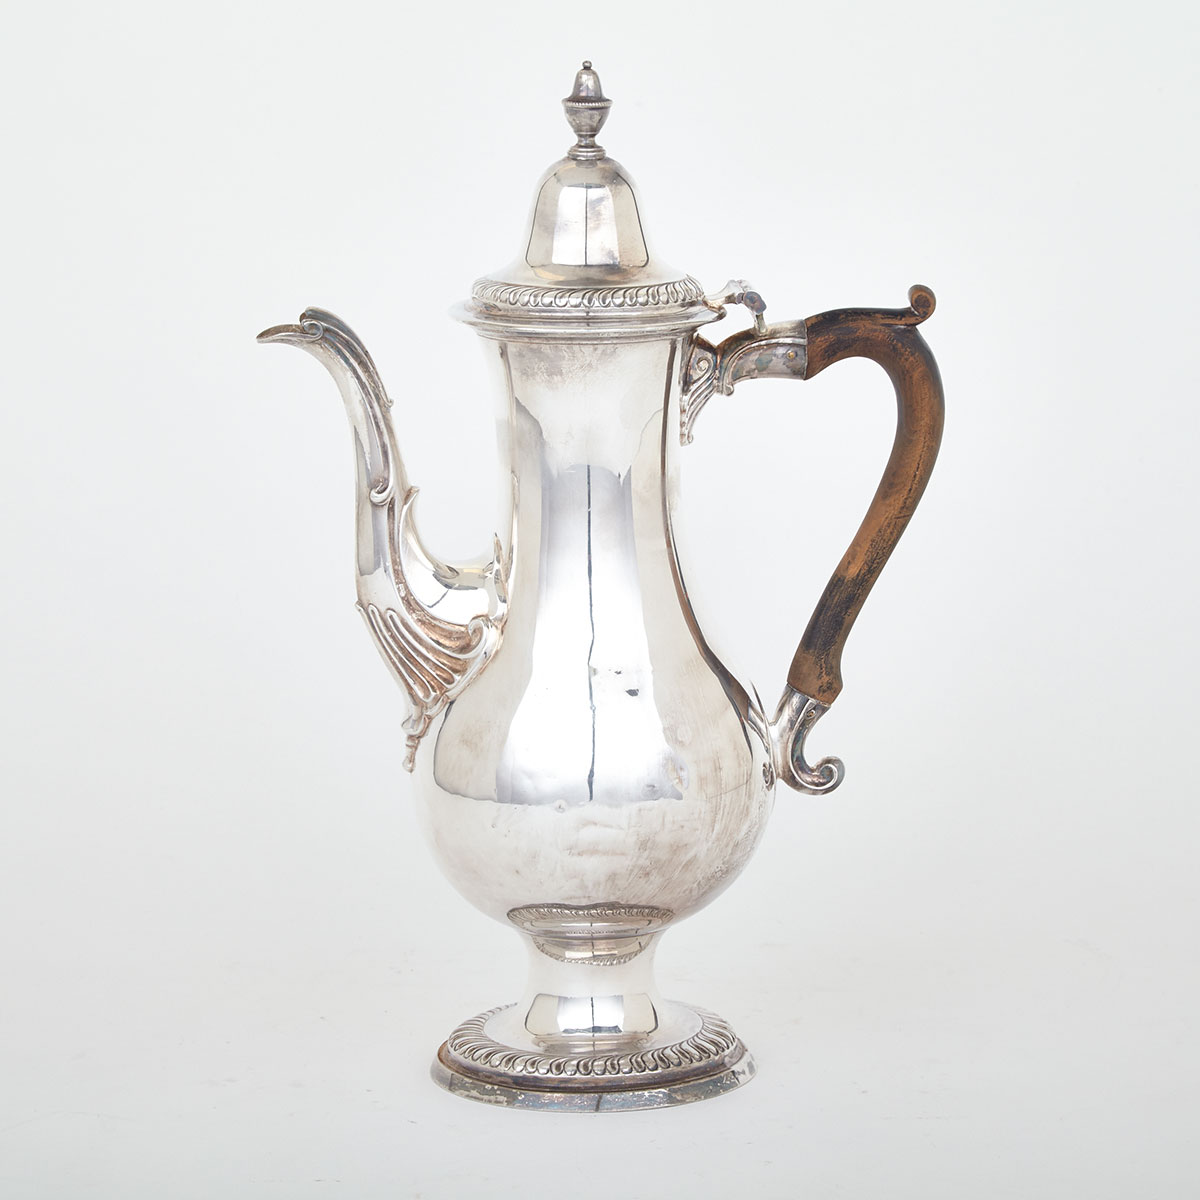 George III Silver Coffee Pot, Newcastle, 1784